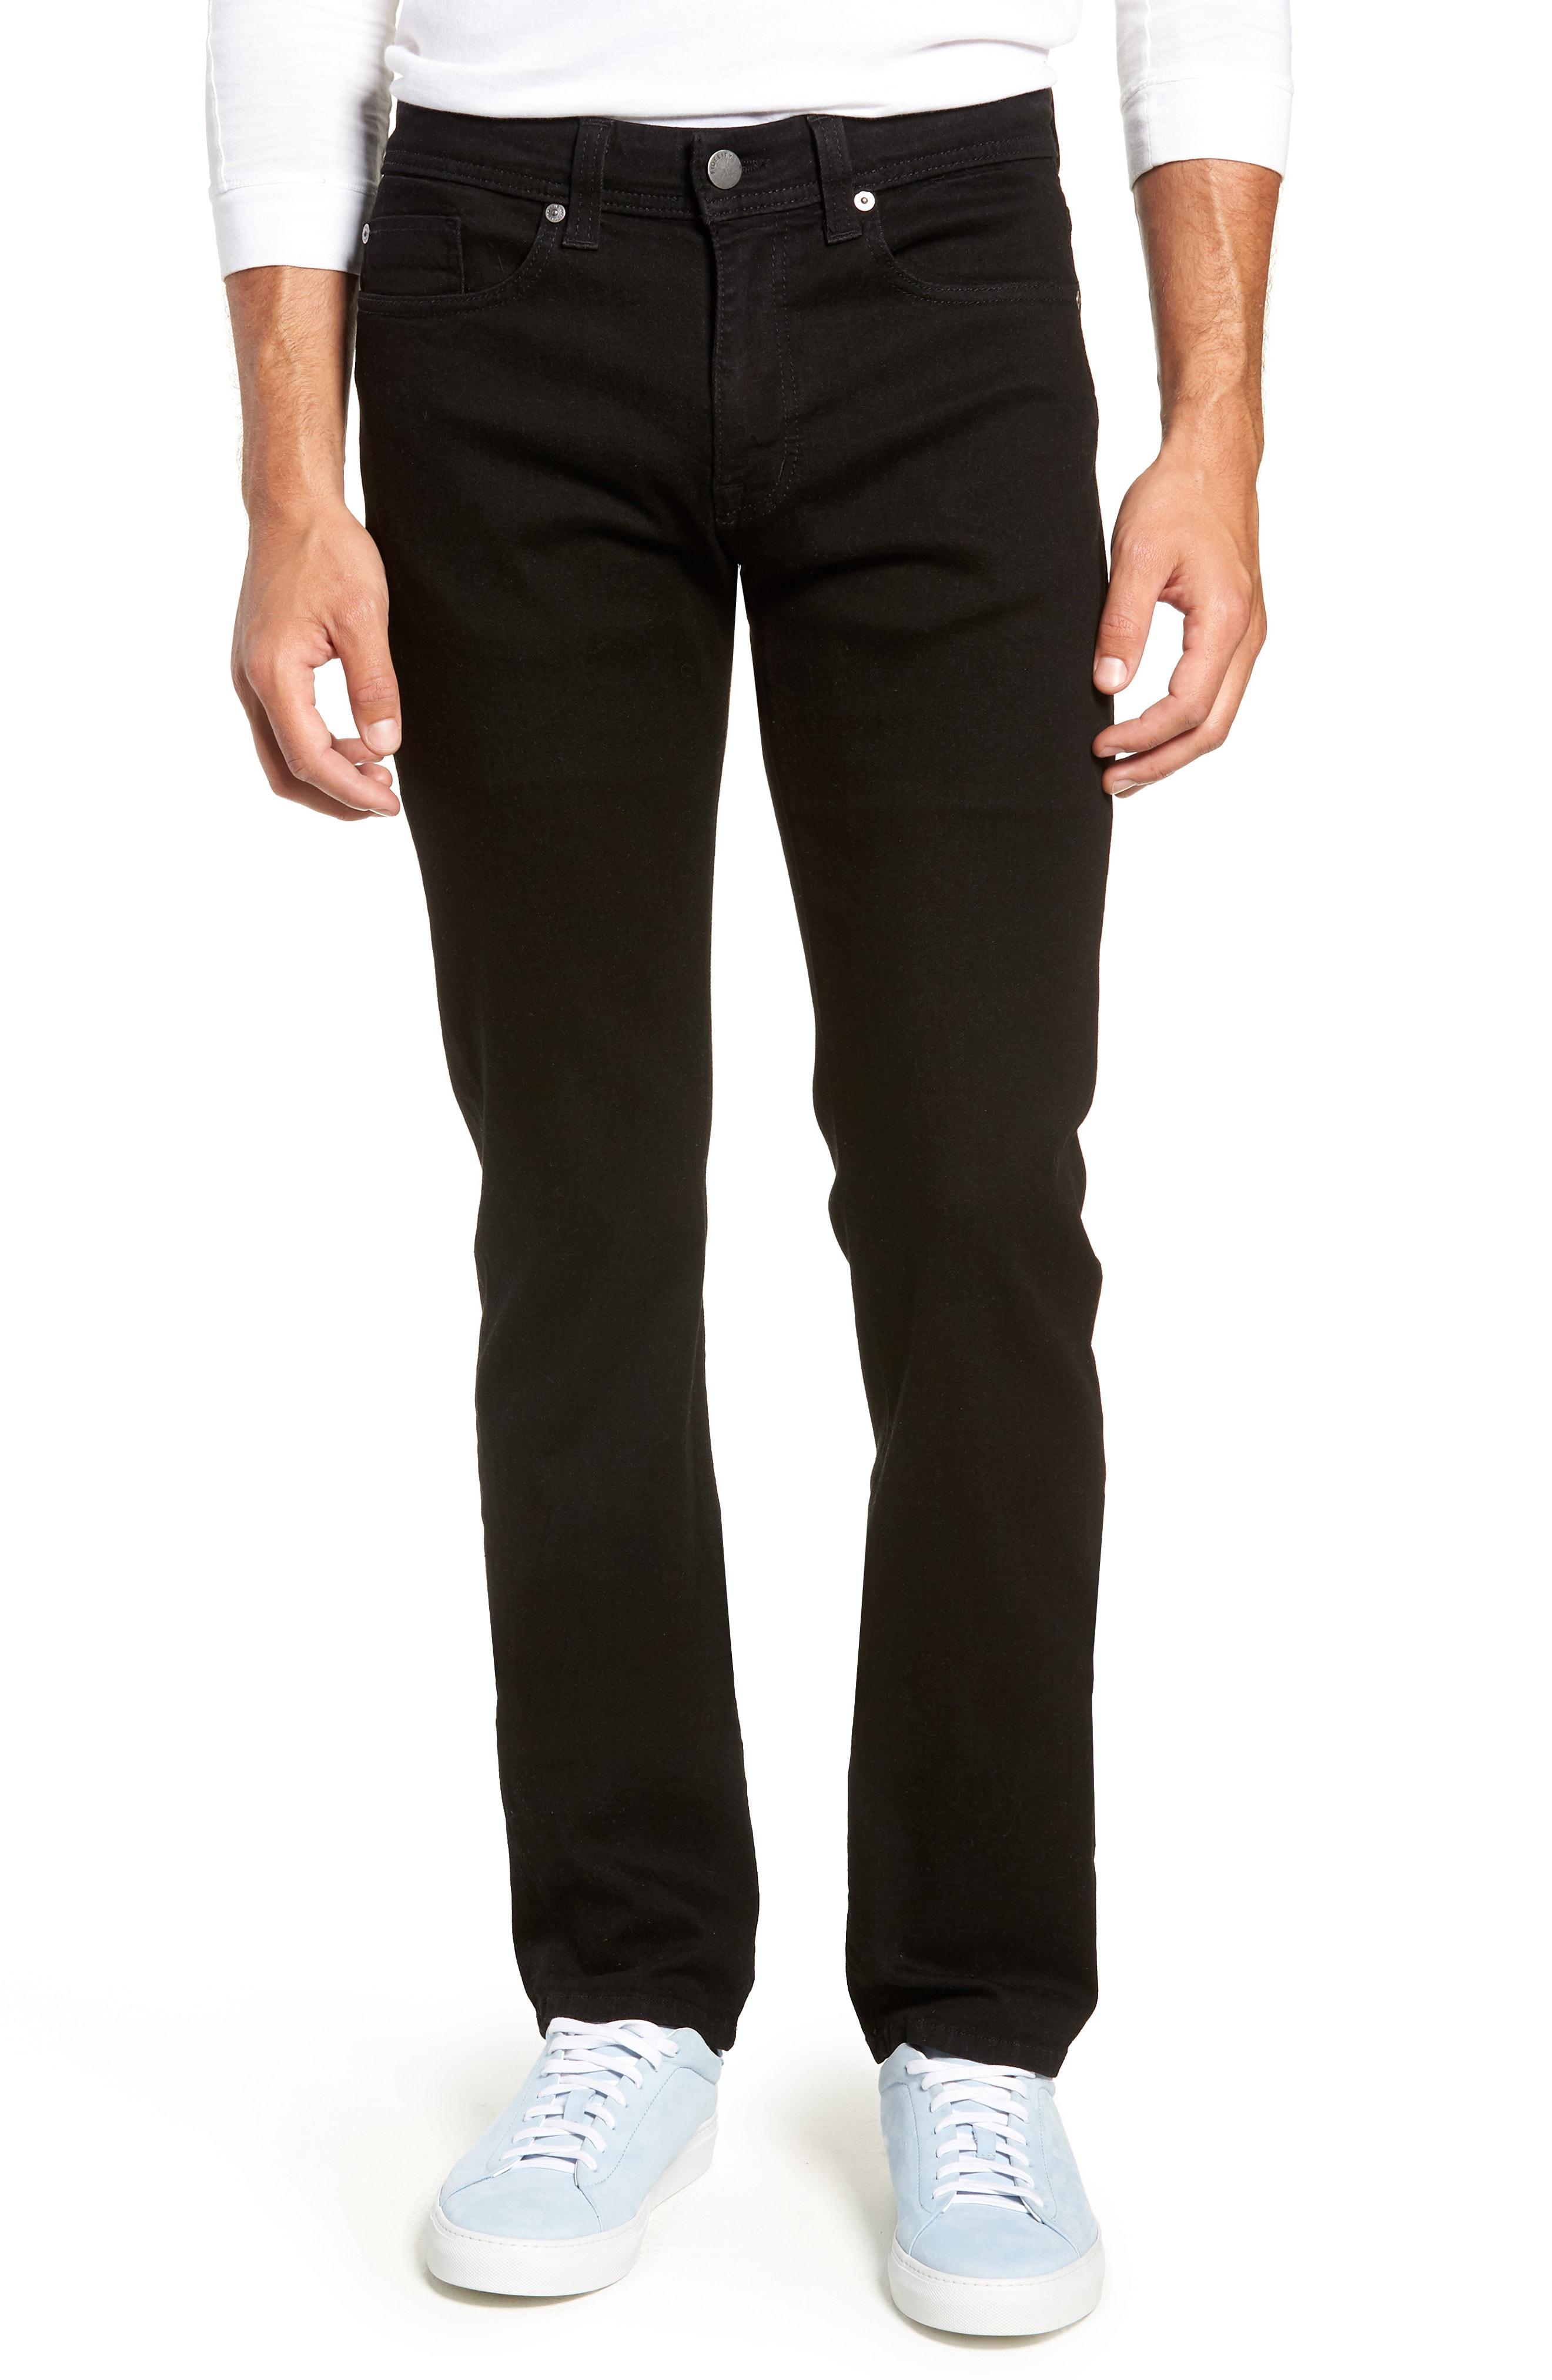 Fidelity Denim Jimmy Slim Straight Leg Jeans in Black for Men - Lyst